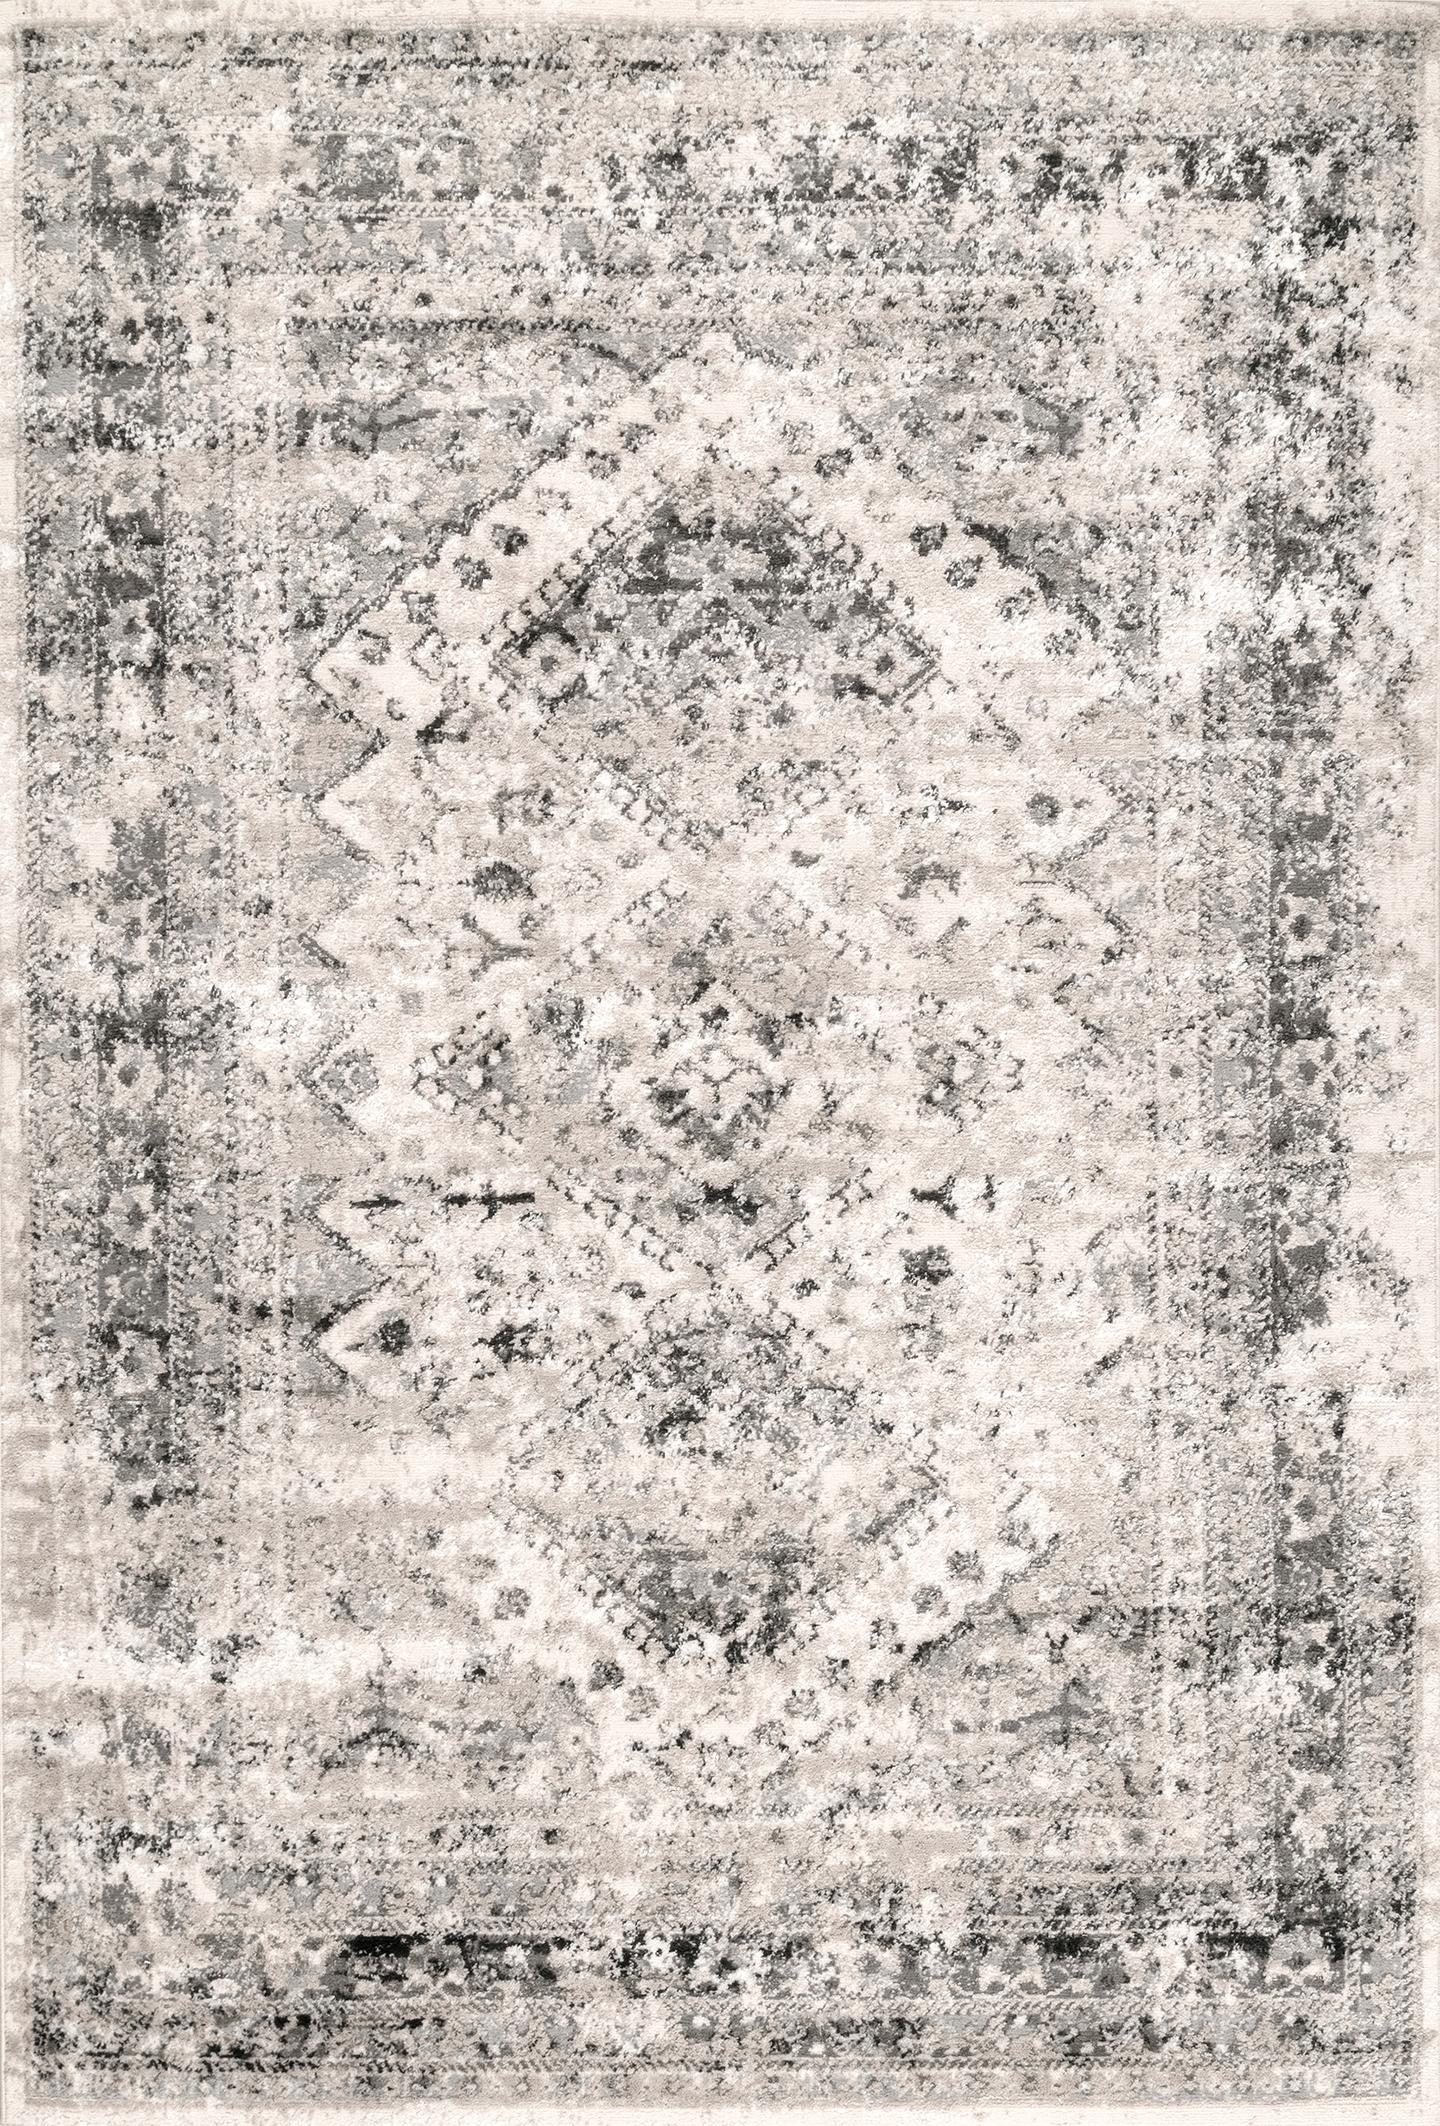  Vintage Speckled Shaunte Area Rug - Image 1